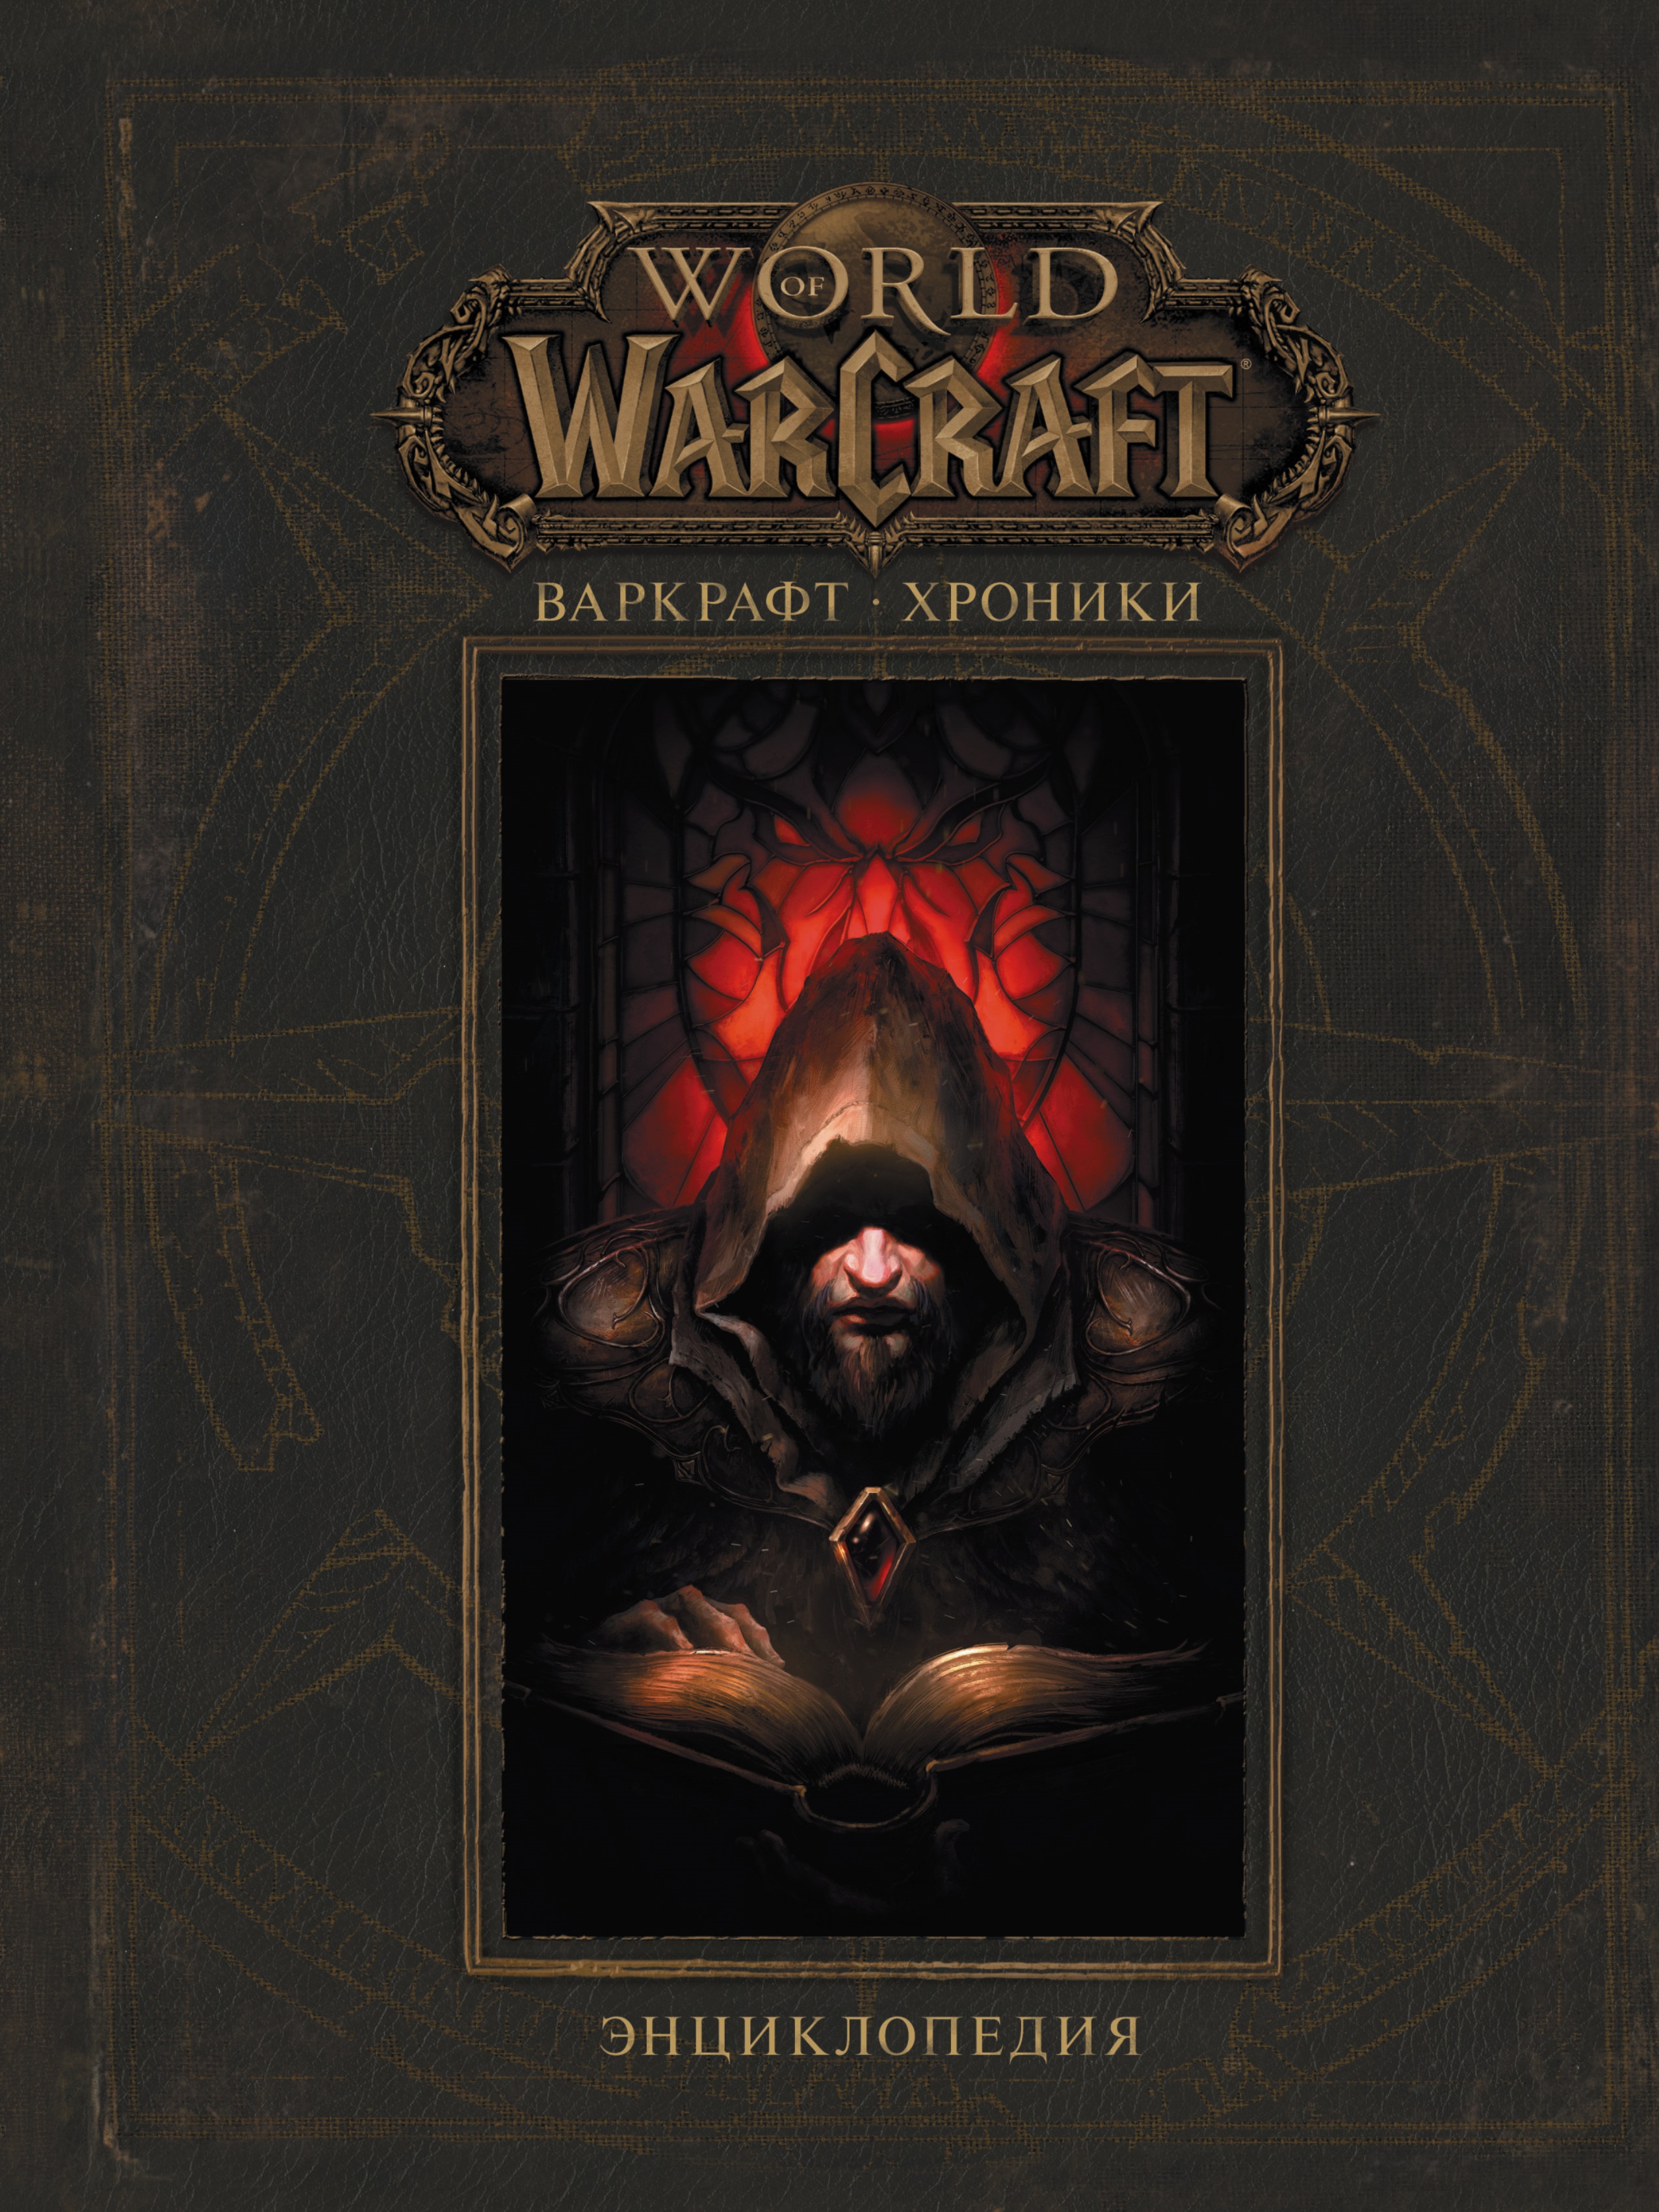 World Of WarCraft: Варкрафт – Хроники. Энциклопедия. Том 1 от 1С Интерес